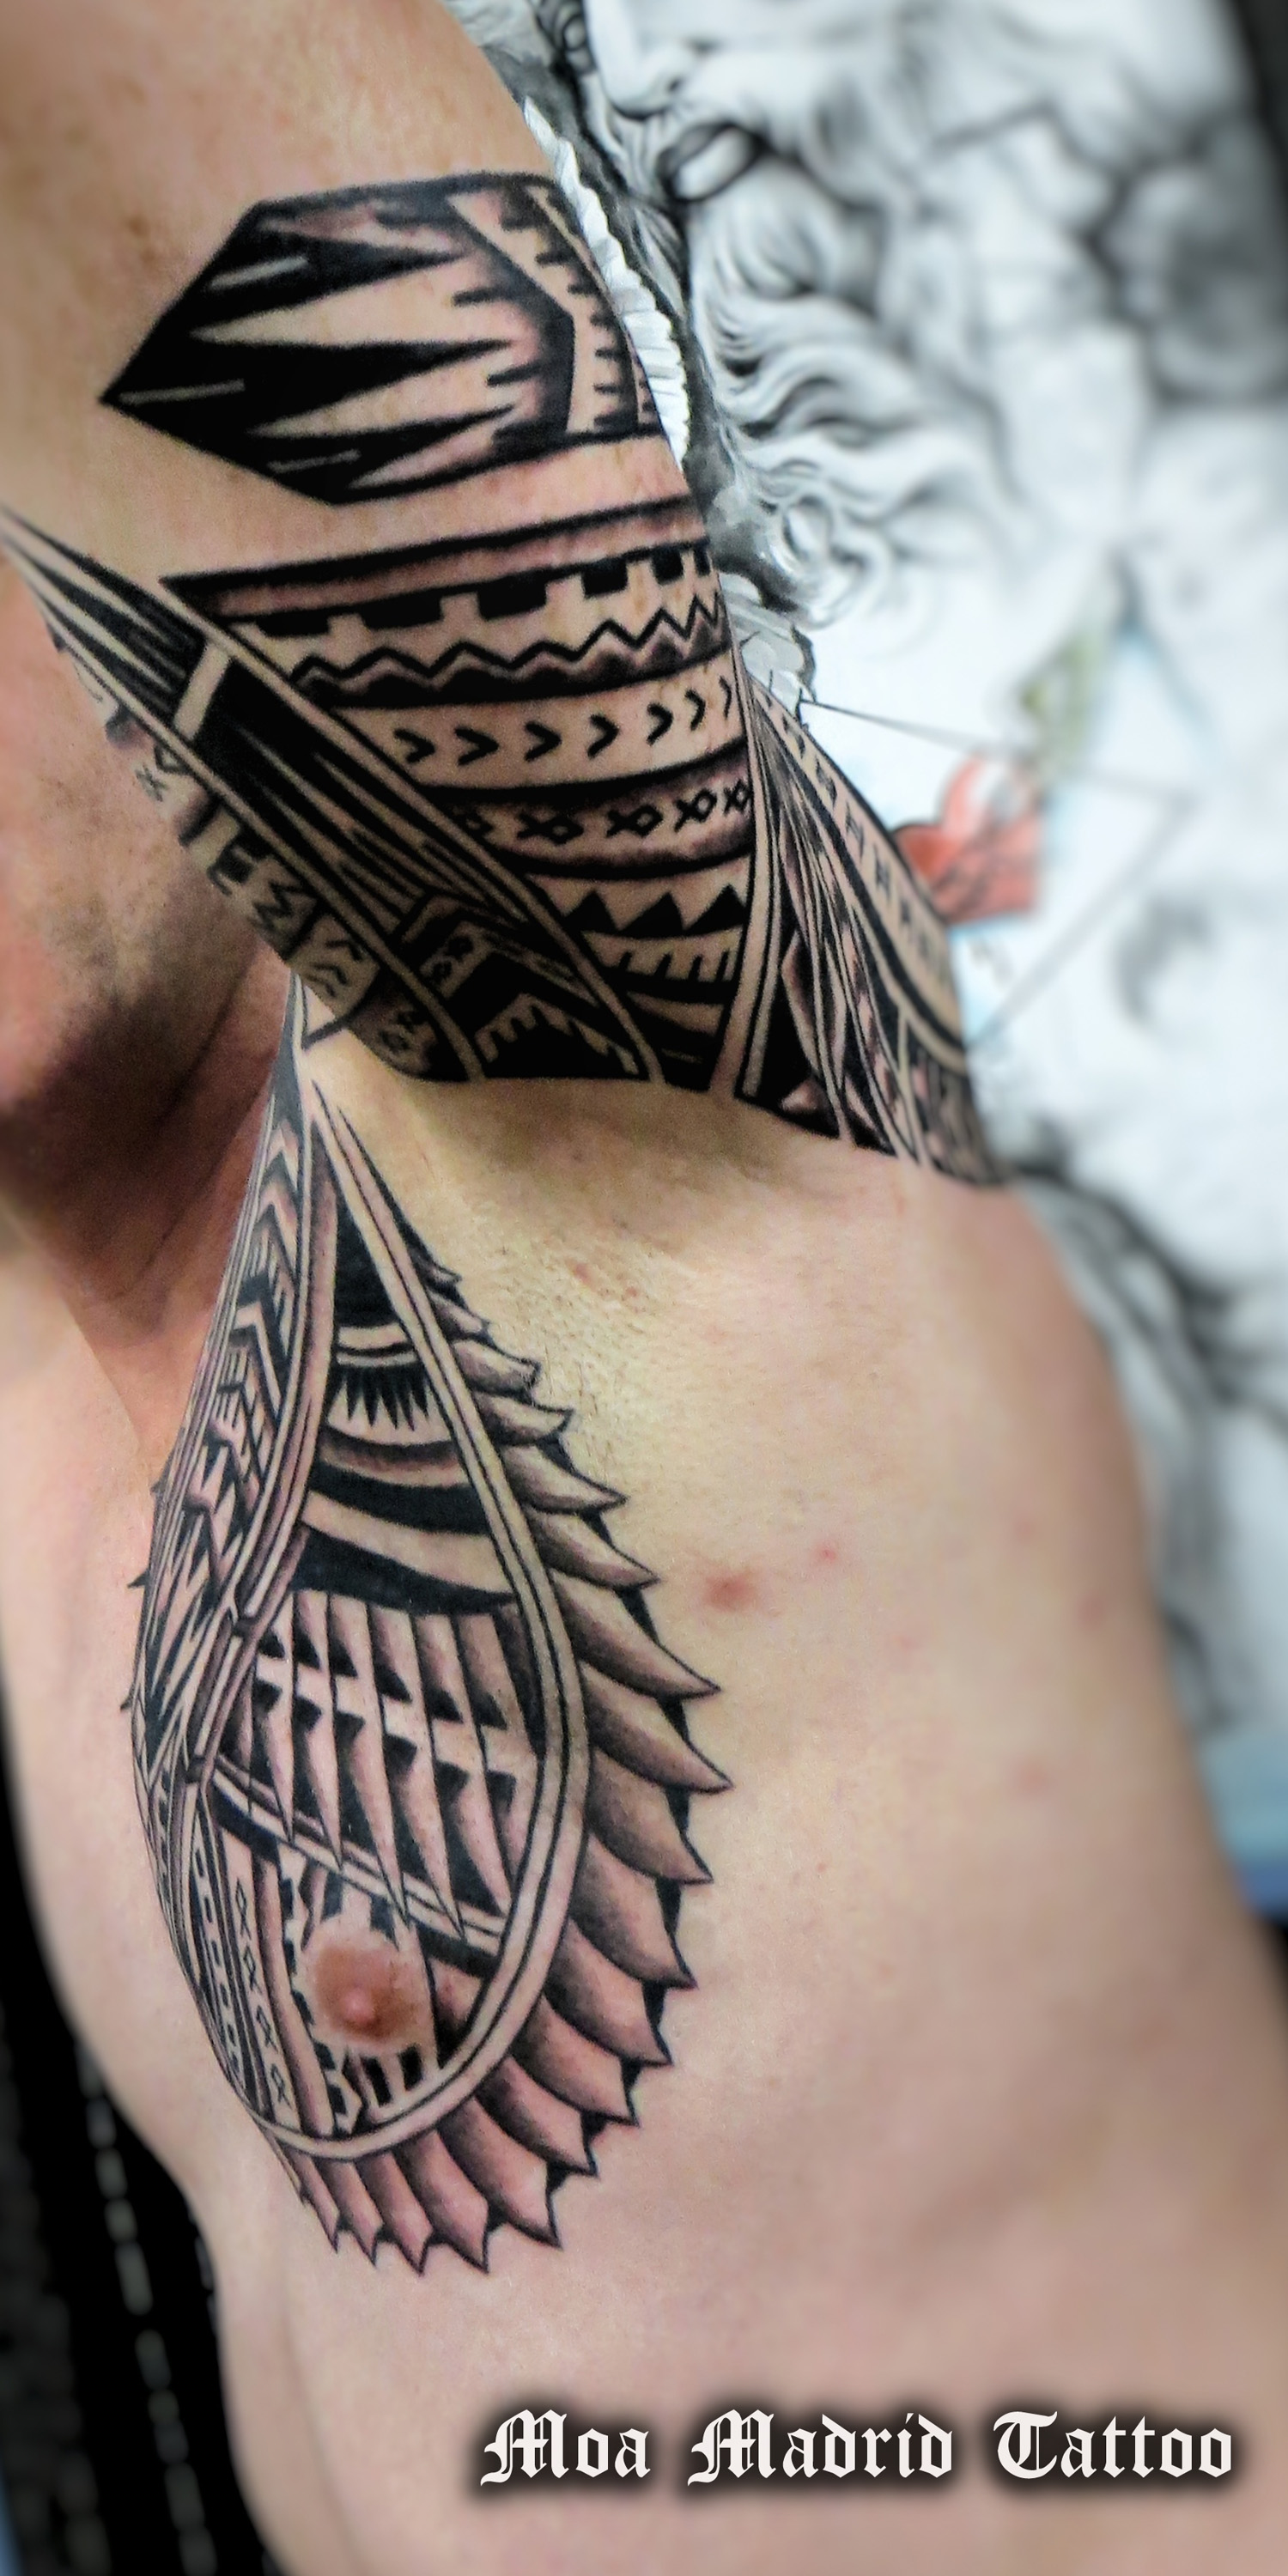 Vista del interior del brazo y el pecho del tatuaje maorí